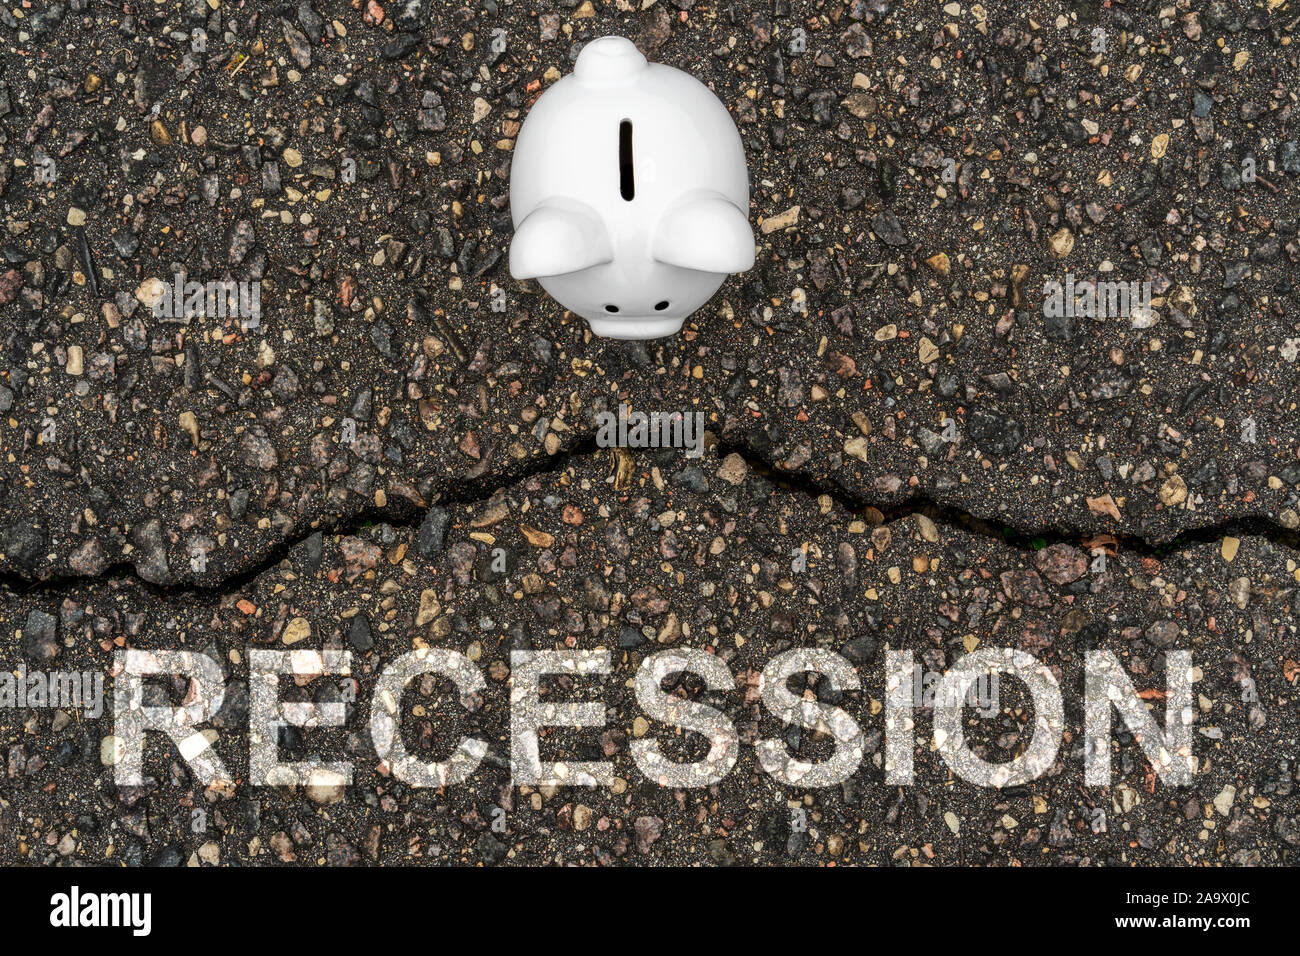 Concetto recessione finanziaria, la depressione economica, crollo finanziario. Salvadanaio in piedi vicino la crepa in asfalto Foto Stock